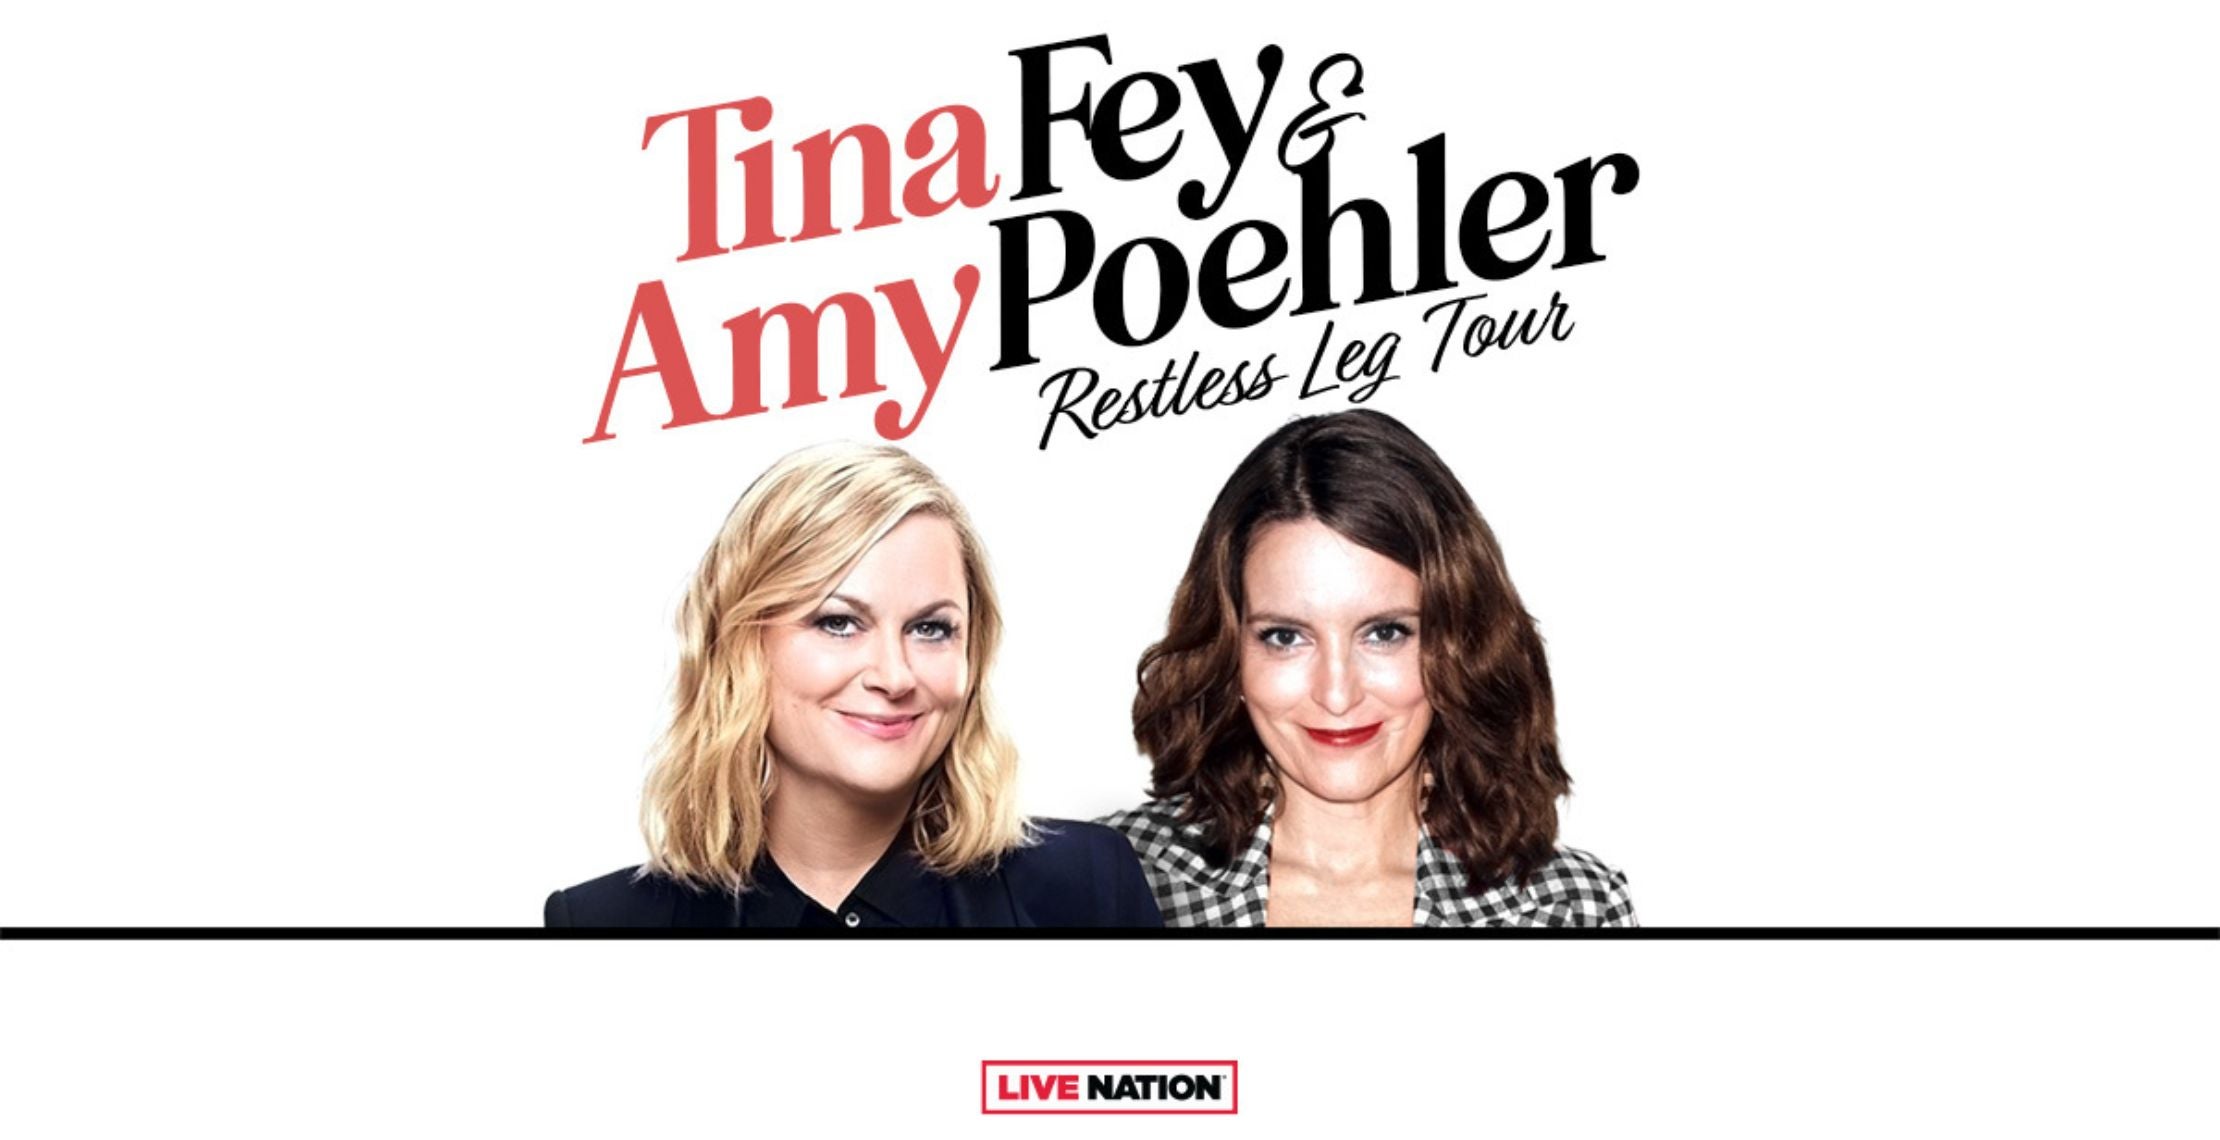 Tina Fey & Amy Poehler Restless Leg Tour